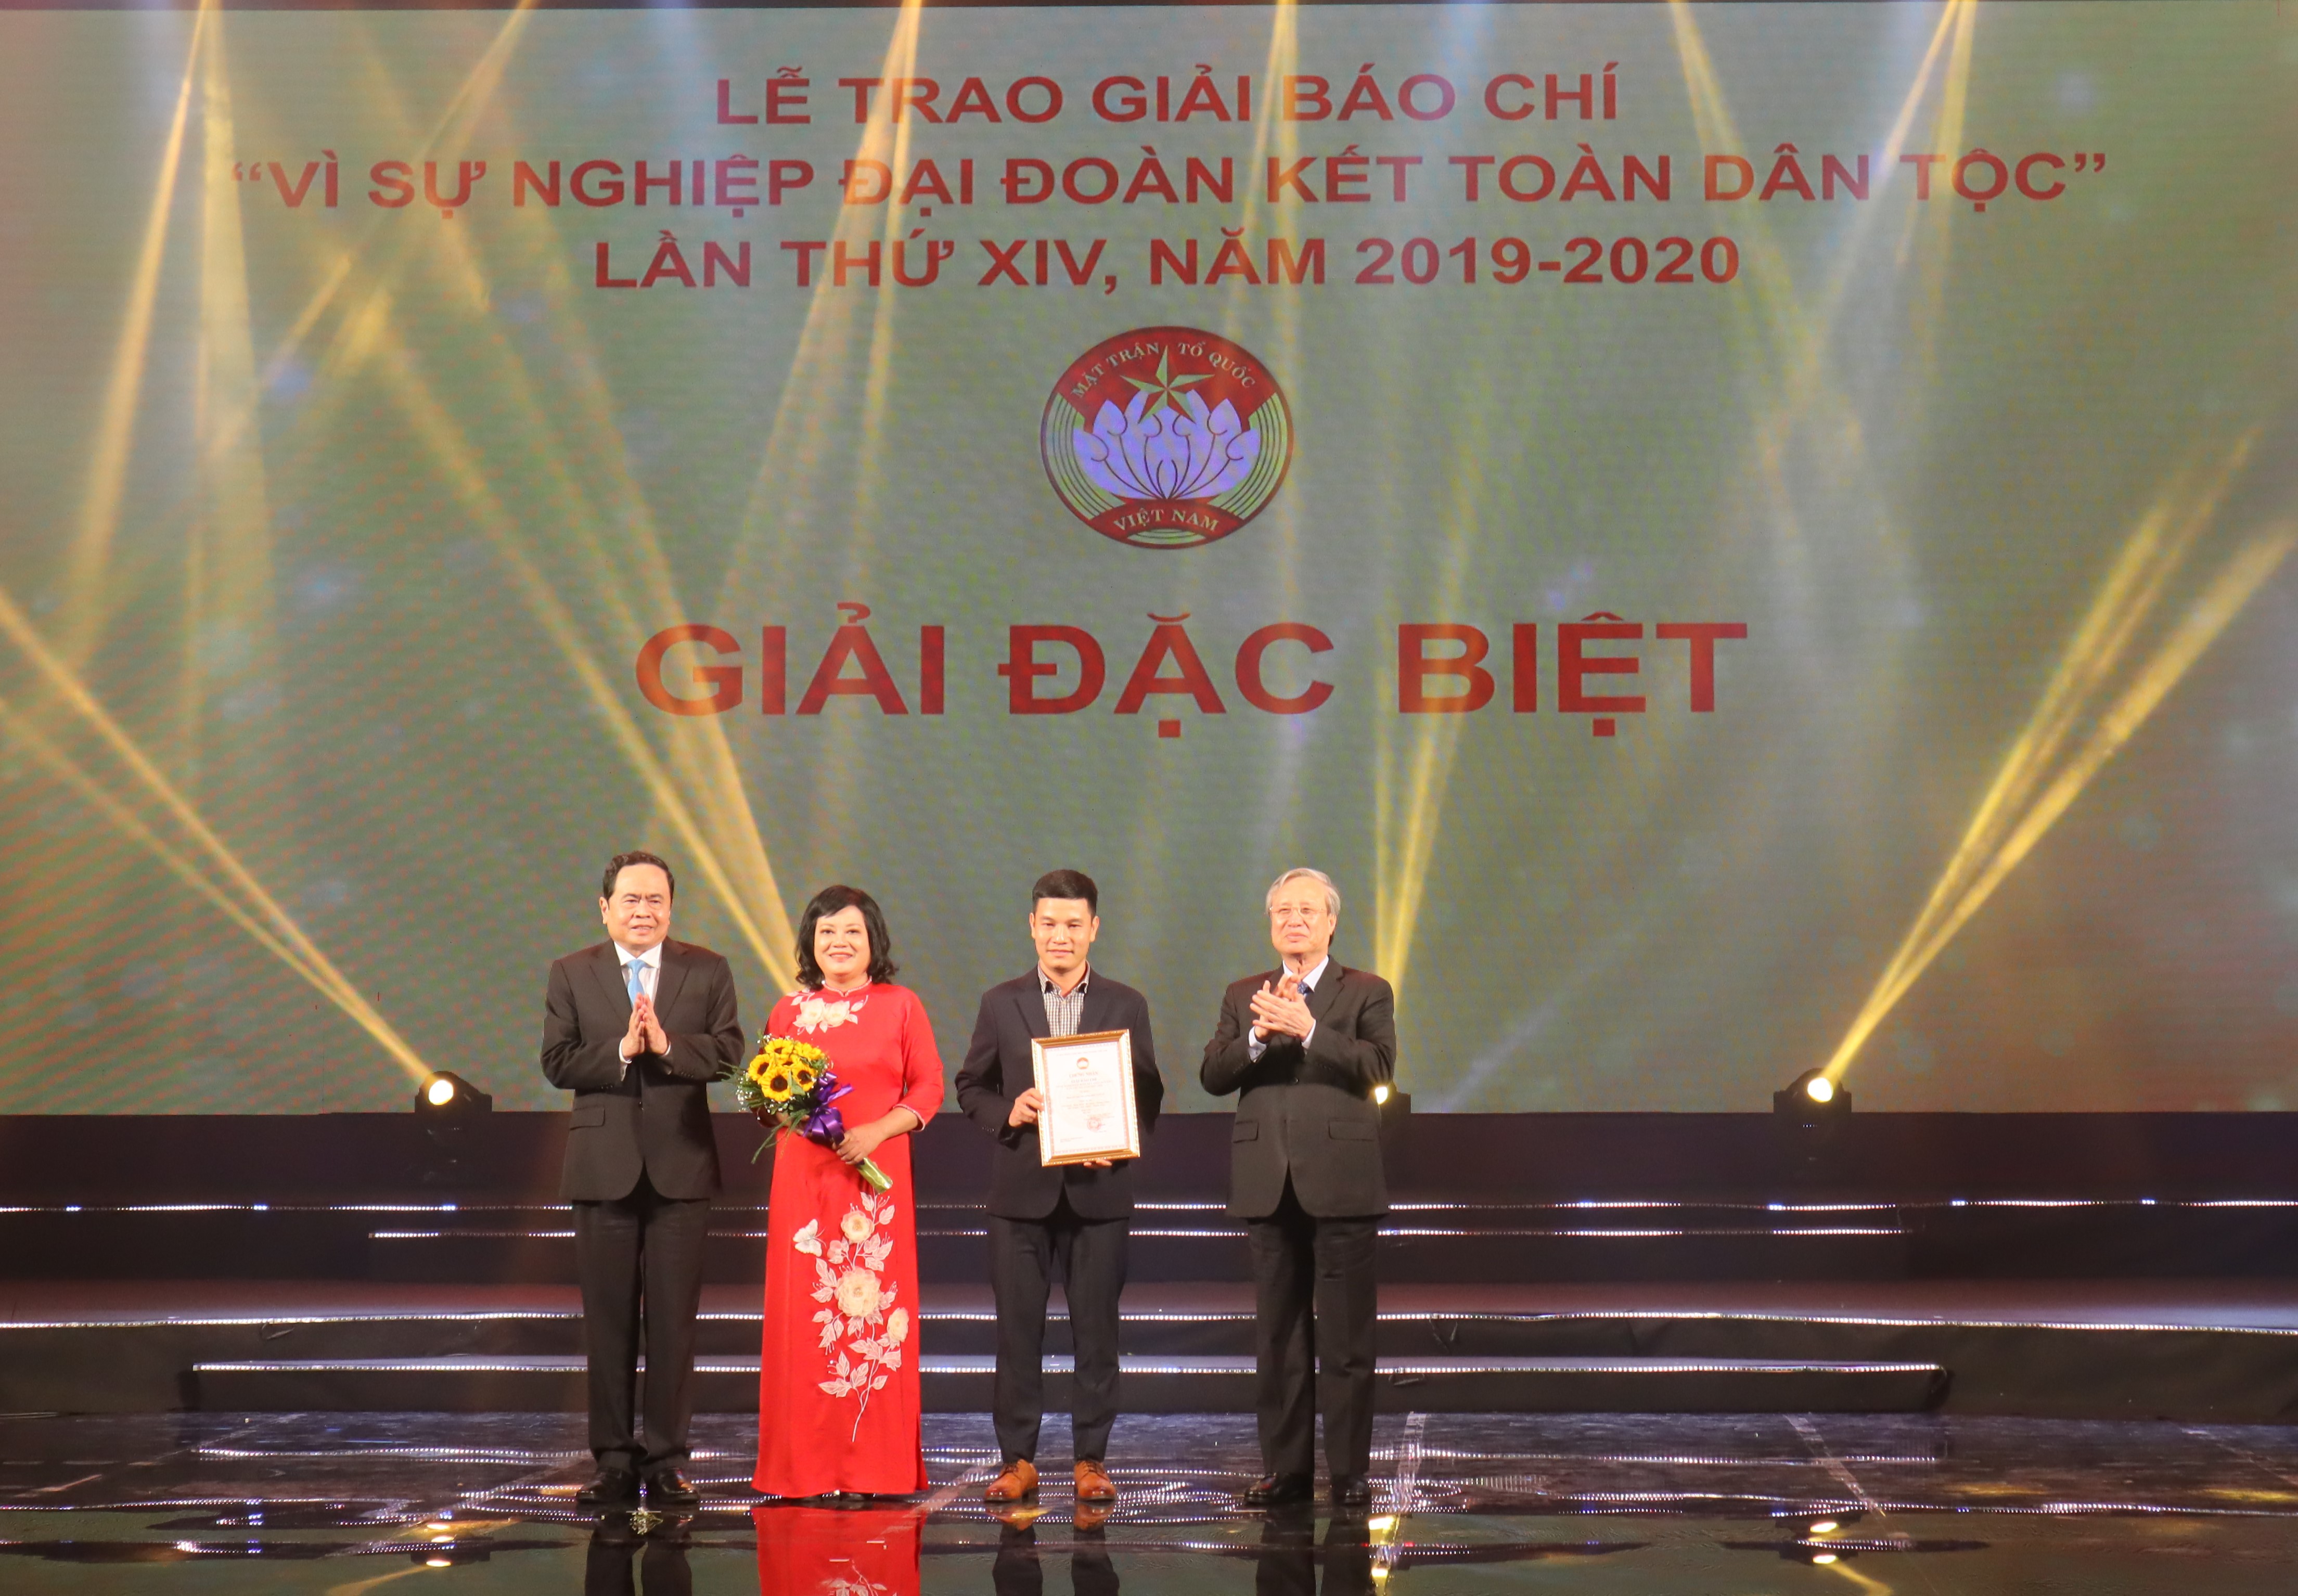 Ủy viên Bộ Chính trị, Thường trực Ban Bí thư Trần Quốc Vượng và Chủ tịch Ủy ban Trung ương MTTQ Việt Nam Trần Thanh Mẫn trao giải Đặc biệt cho đại diện Đài Truyền hình Việt Nam.